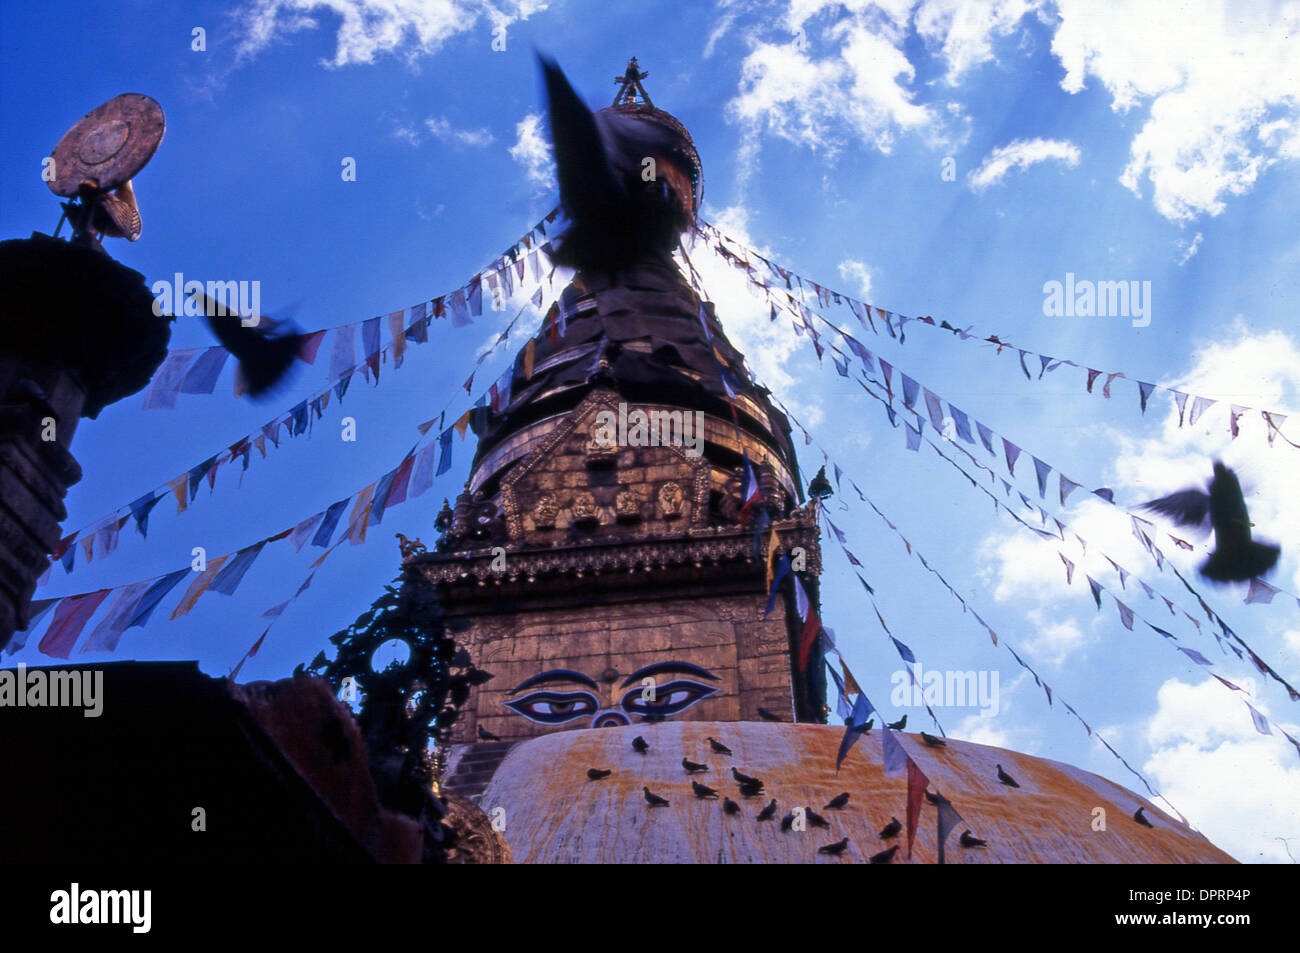 30 dic 2008 - Nepal - Nepal Il Nepal è un paese senza sbocco sul mare in Asia del Sud con l'Himalaya mountain range in tutta l'Europa settentrionale ed occidentale e parti di otto del mondo dieci montagne più alte, tra cui la più alta del Monte Everest, che giacciono all'interno delle sue frontiere. L induismo è praticato da una larga maggioranza del popolo, ma il paese ha anche una forte tradizione buddista. (Cred Foto Stock